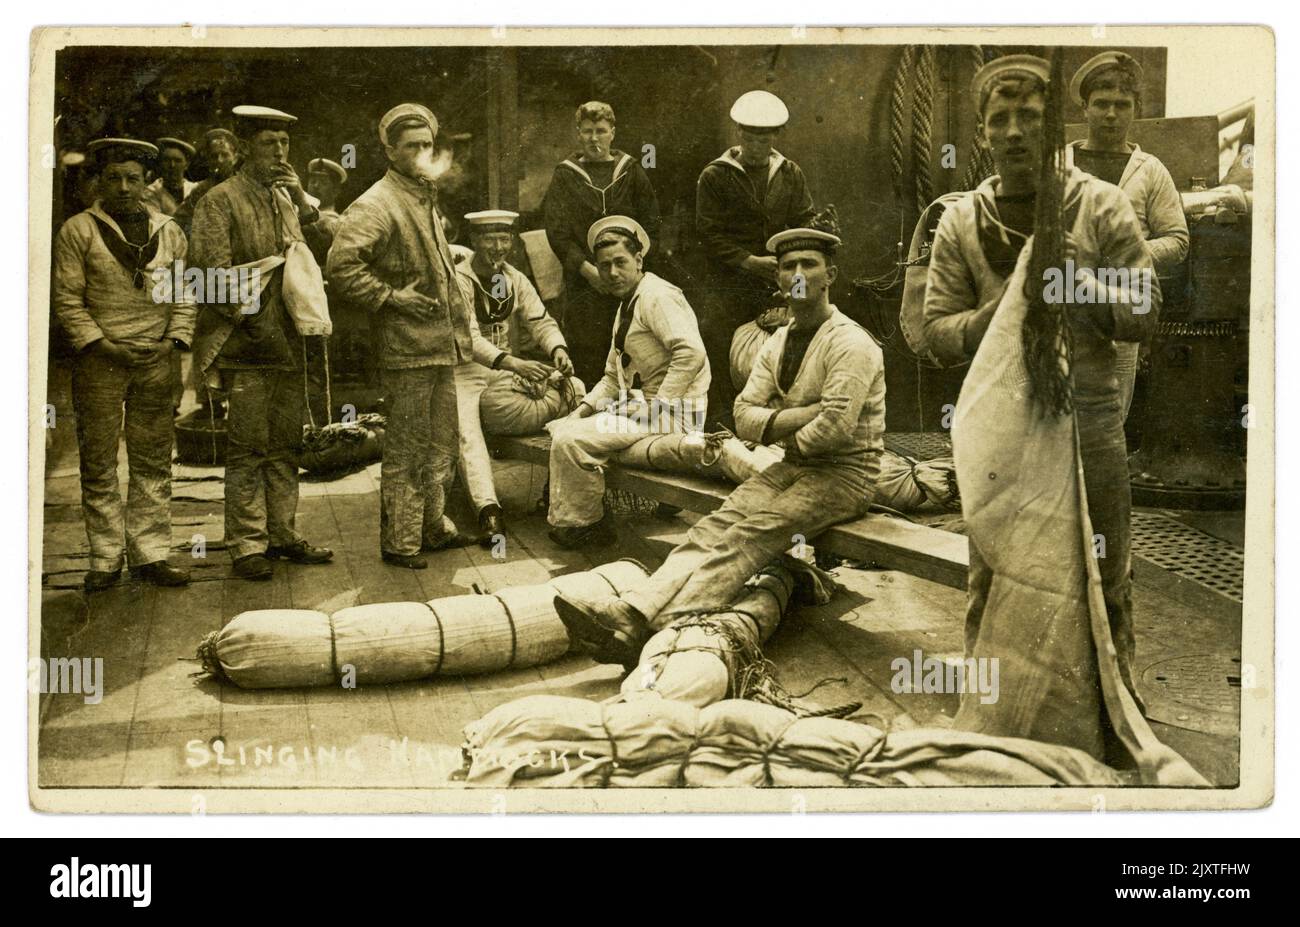 Carte postale originale de WW1 ans d'un groupe de marins de la marine royale qui claque des hamacs sur un navire, beaucoup de personnages, un homme est fumeur, daté et posté de Portsmouth sur 5 octobre 1916, juste avant la fin de la guerre, au Royaume-Uni Banque D'Images